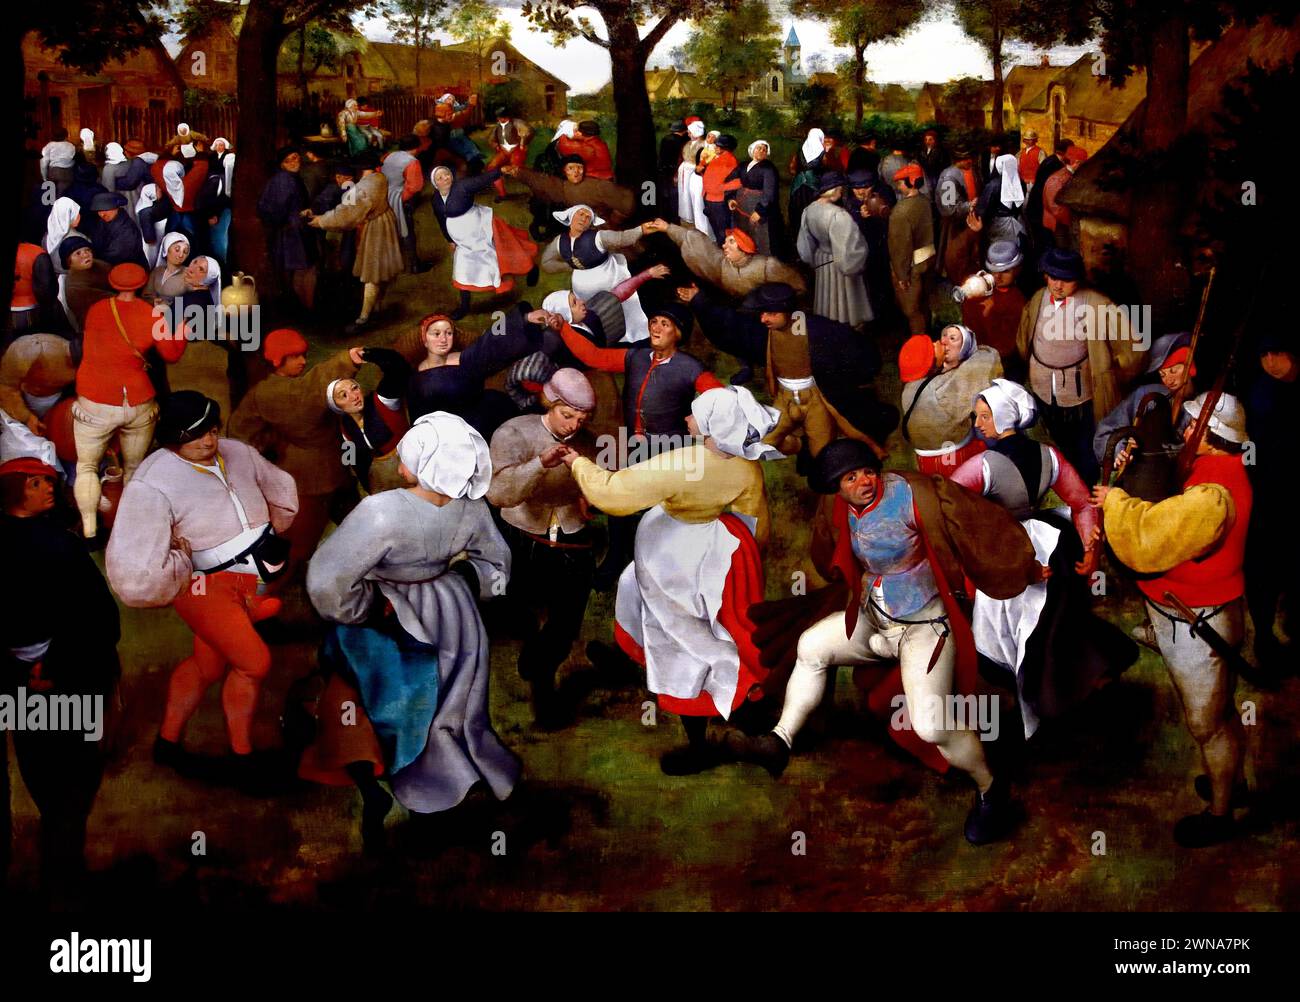 La danse de la mariée de Pieter Brueghel l'ancien (1526/1530–1569) - Musée Royal des Beaux-Arts, Anvers, Belgique, Belgique. ( De dans der bruid, Pieter Bruegel I, 16de eeuw, ) Banque D'Images